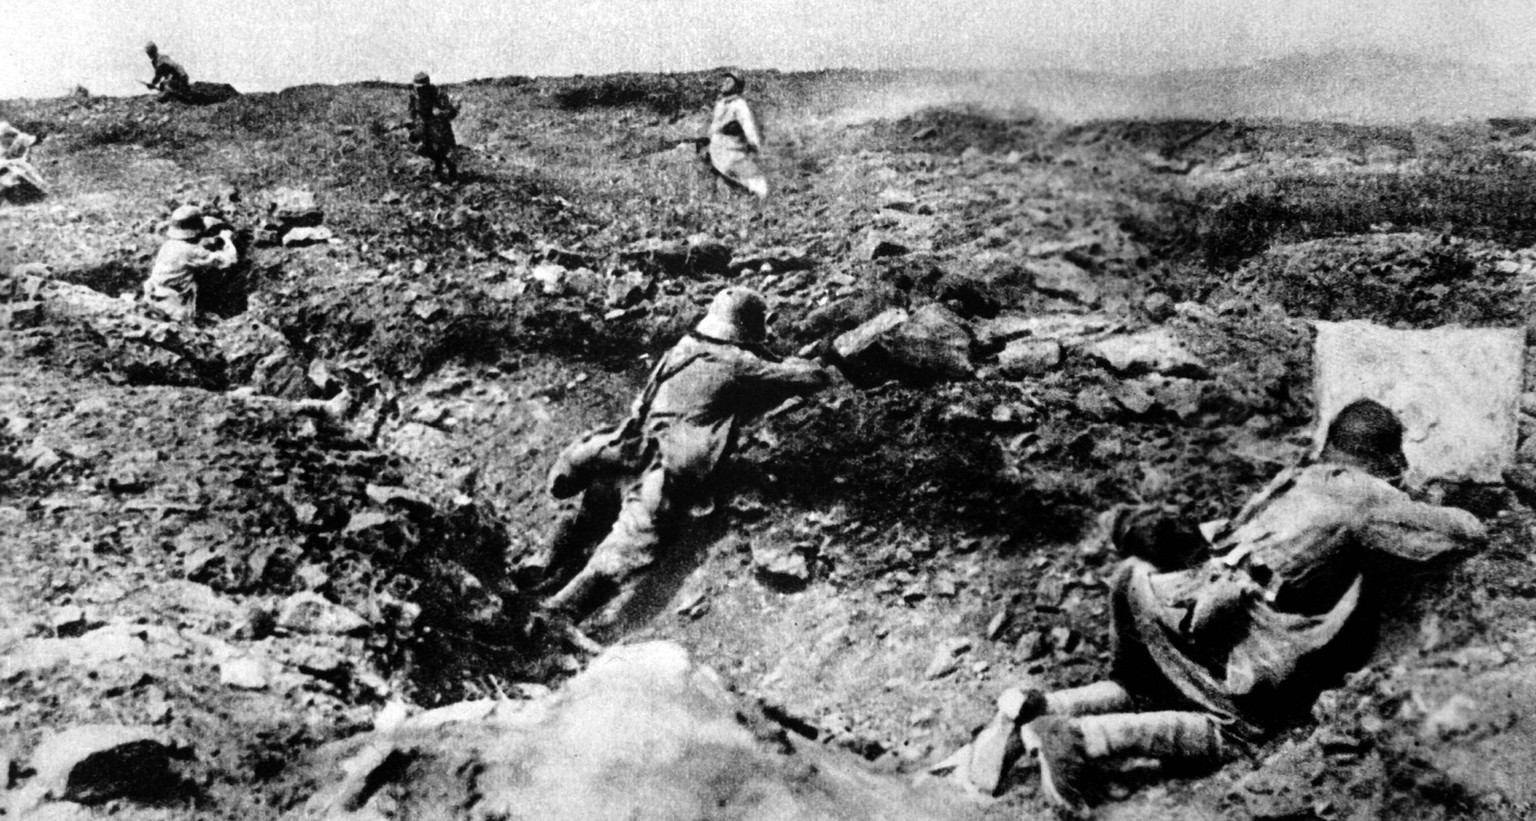 Massenhaftes Sterben im Grabenkrieg: Französischer Angriff auf deutsche Stellungen in der Champagne, 1917.